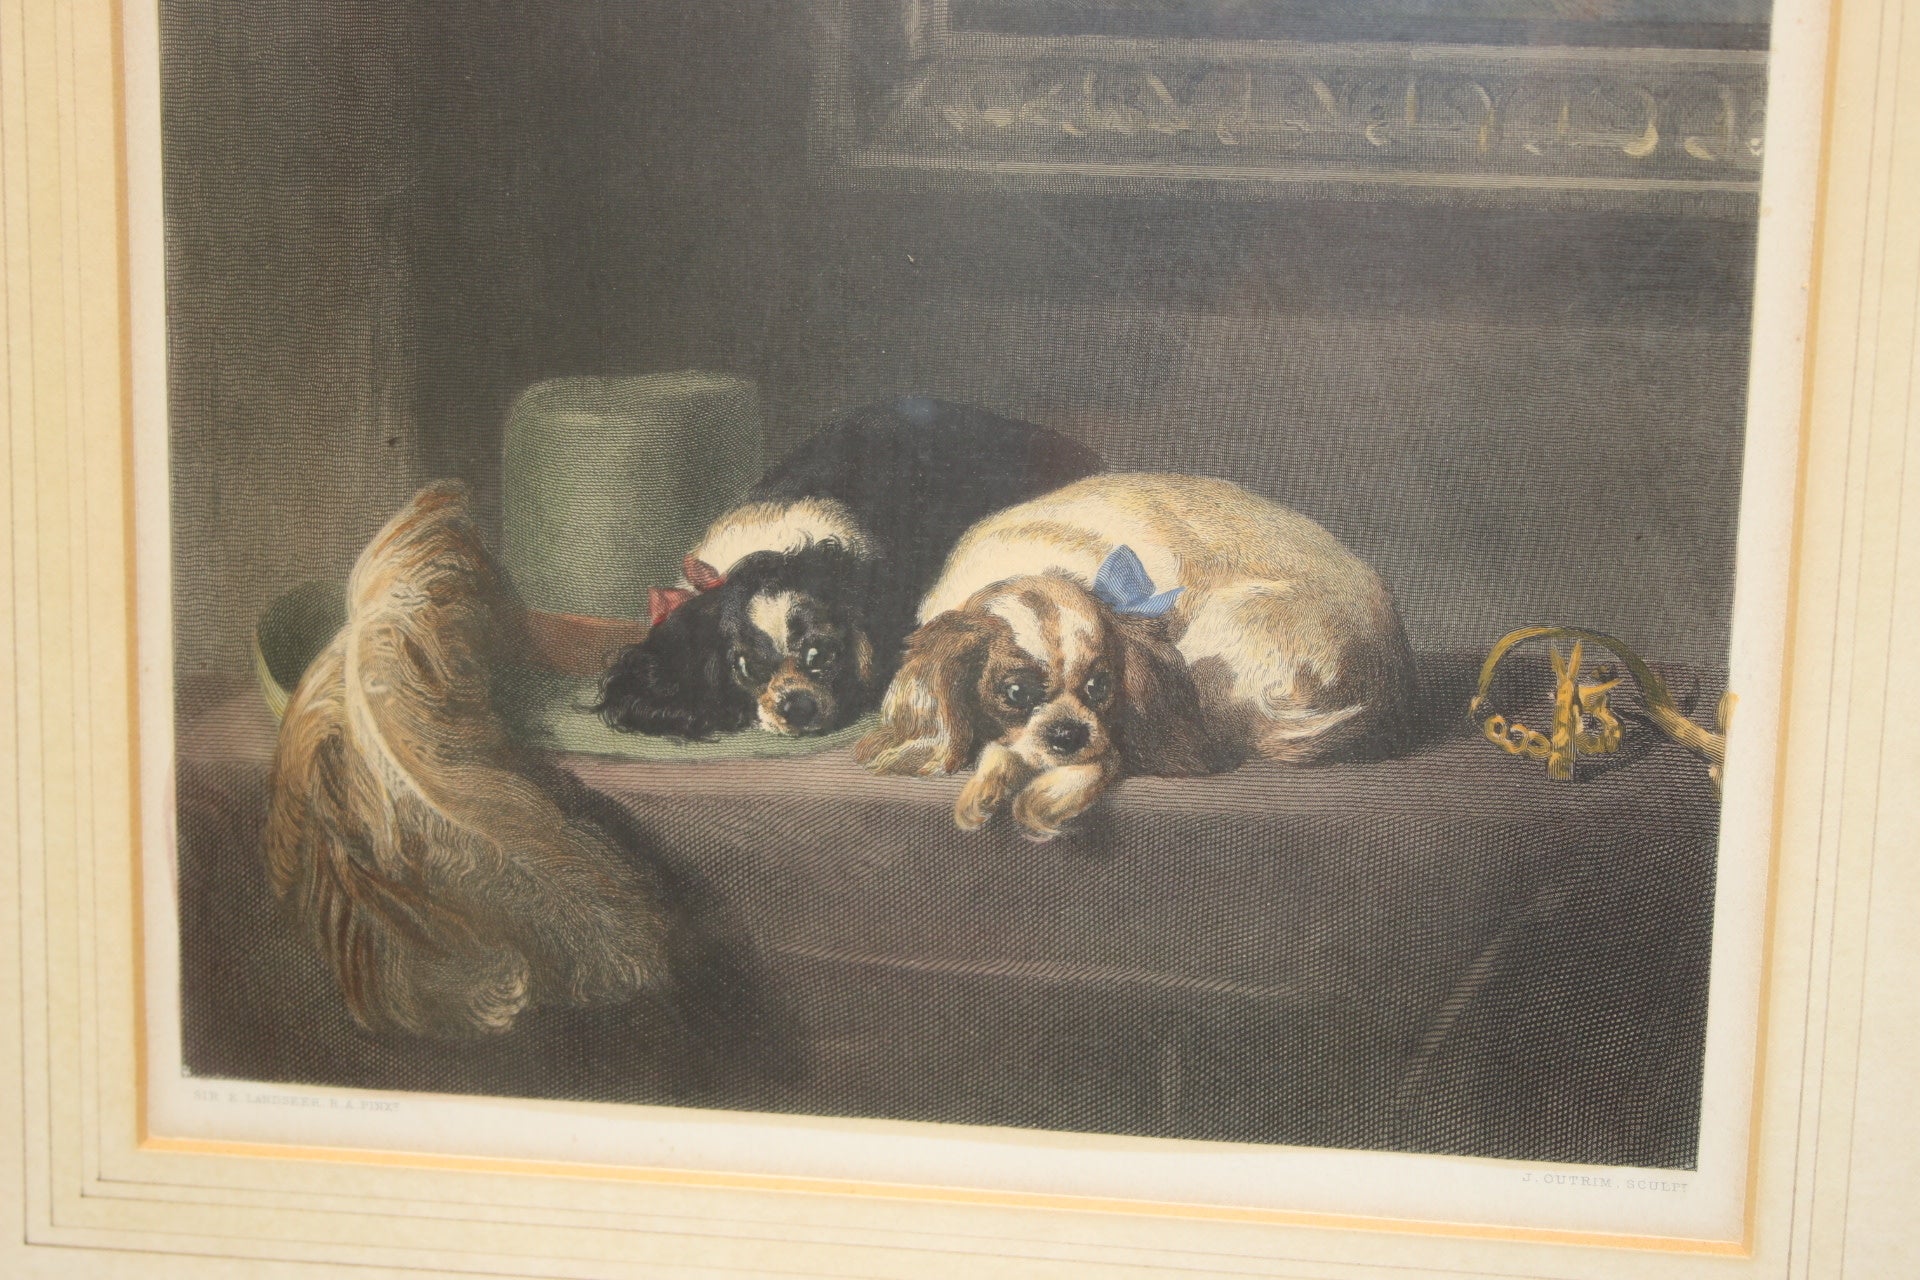 Wanddecoratie druk hond apen 1880 voorkant hondjes